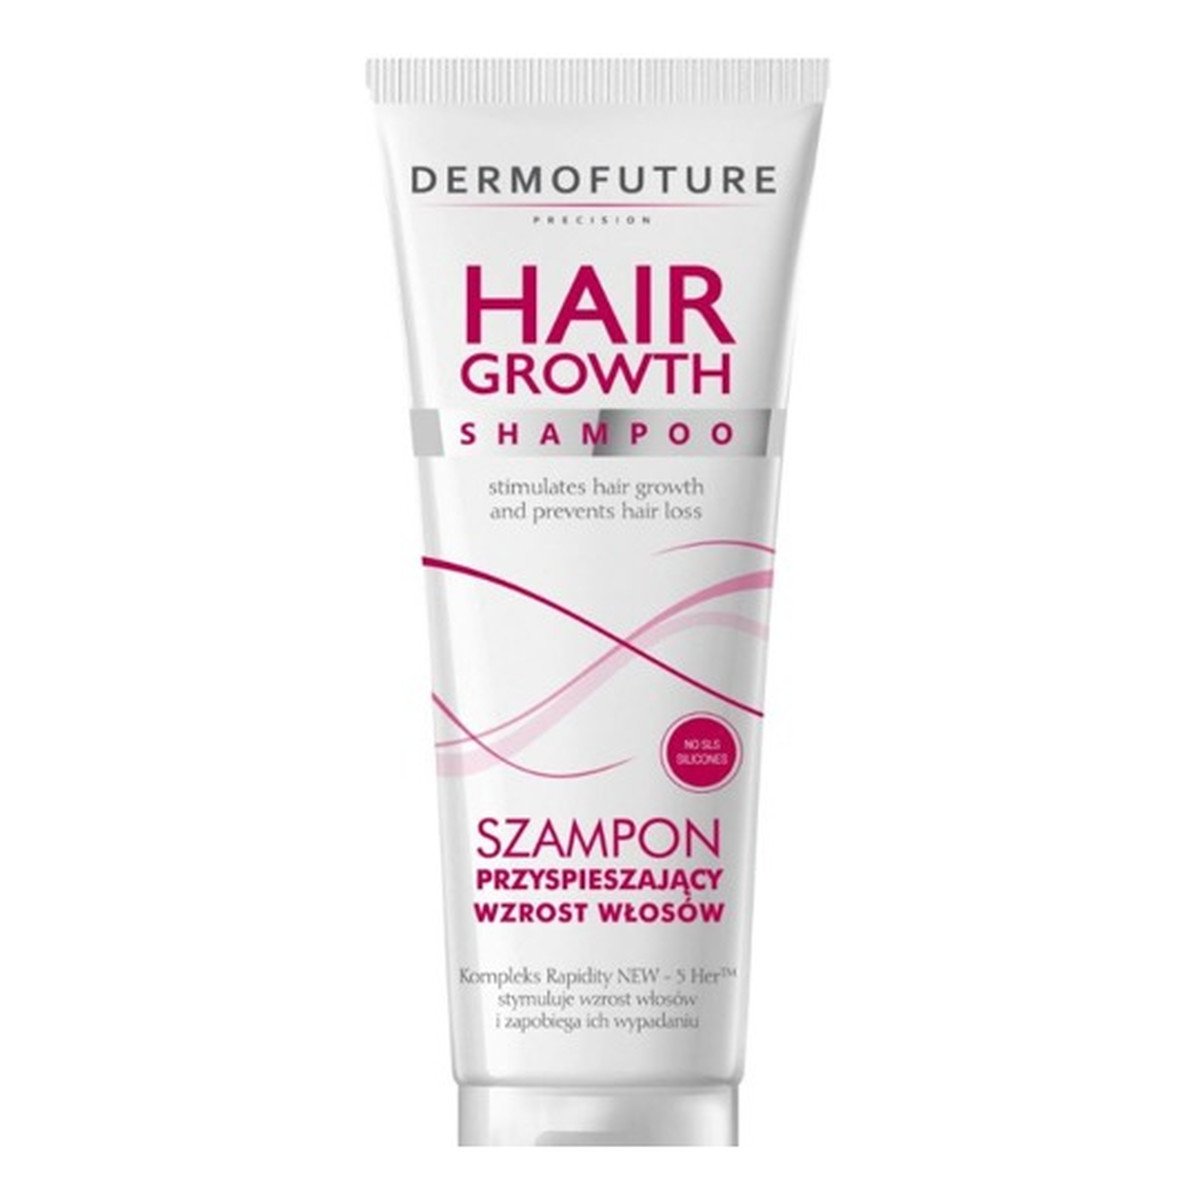 dermofuture szampon przyspieszający wzrost wizaz